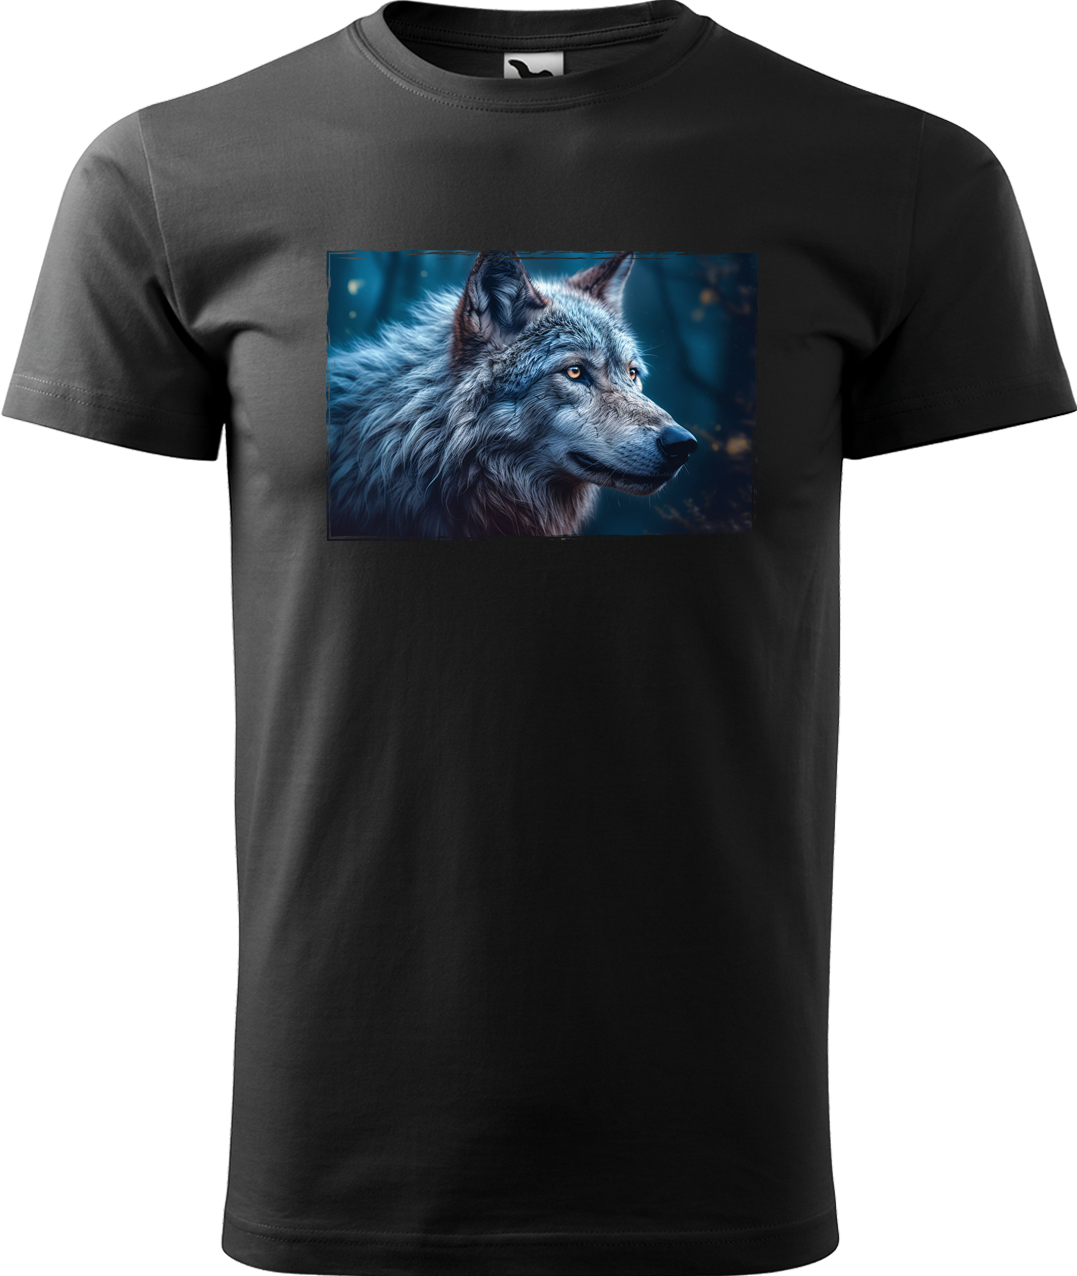 Pánské tričko s vlkem - Modrý vlk Velikost: XL, Barva: Černá (01)